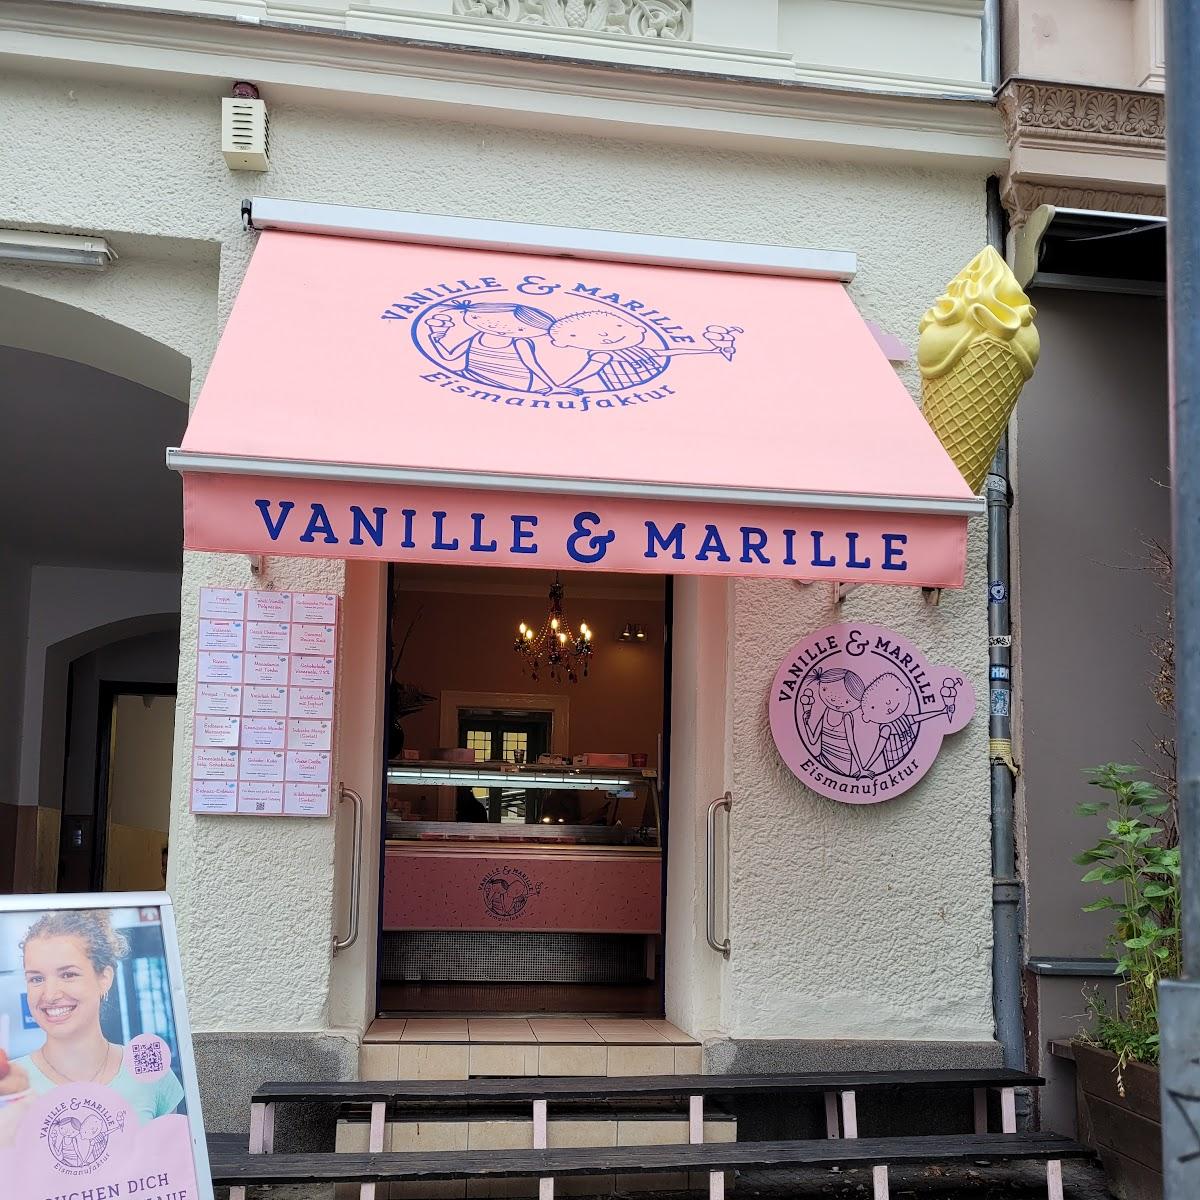 Restaurant "Vanille & Marille Kreuzberg 61" in Berlin